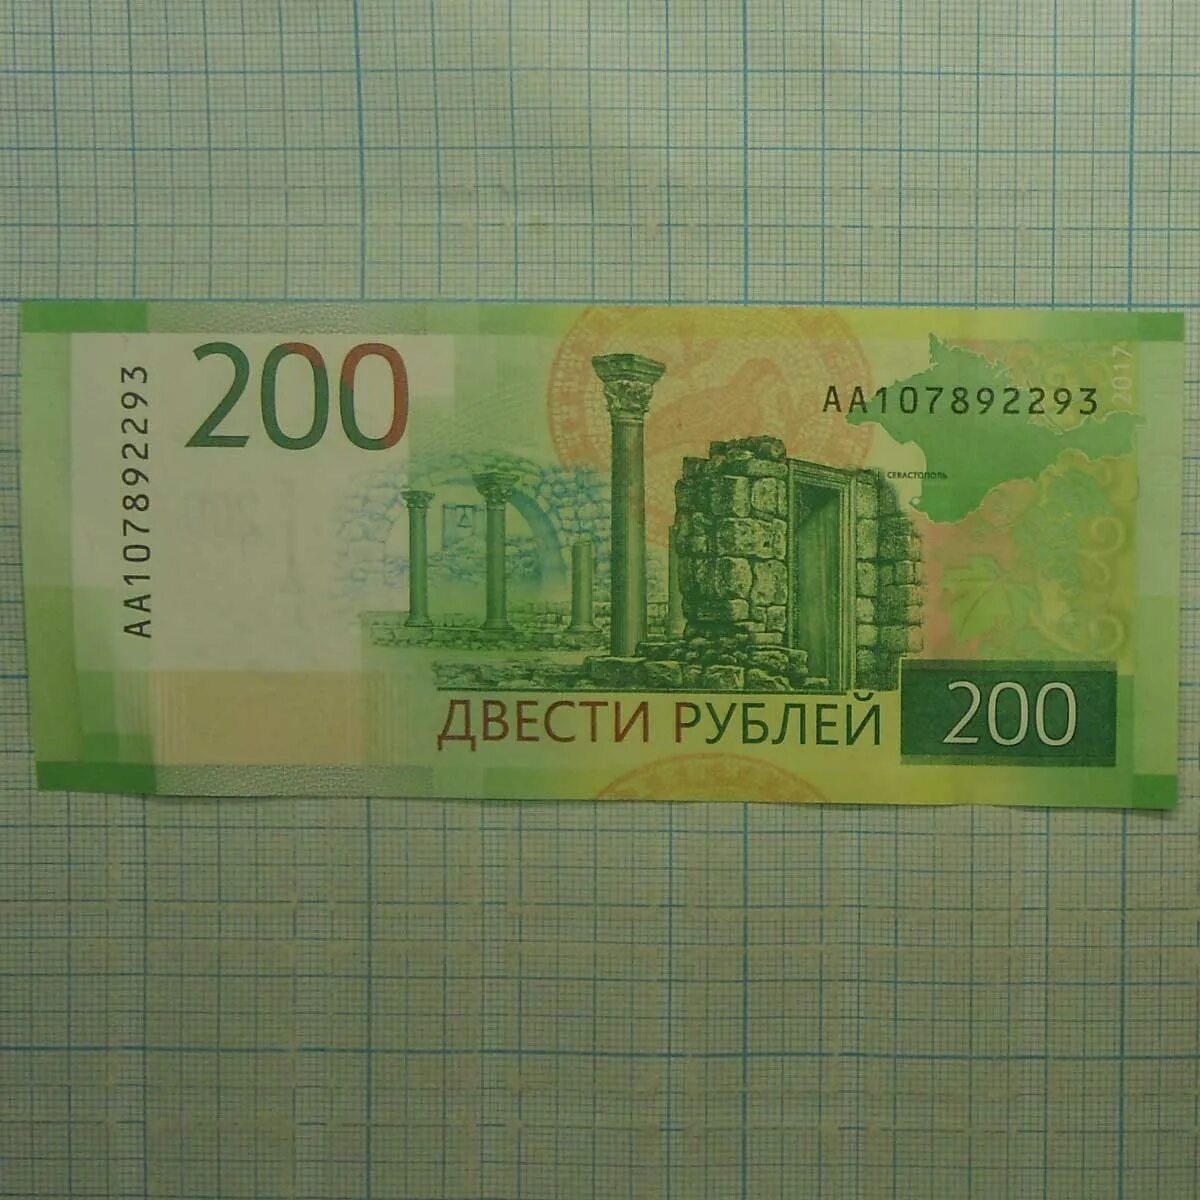 14 200 в рублях. 200 Рублей. Купюра 200 рублей. 200 Рублей банкнота. 200 Рублей 2017.